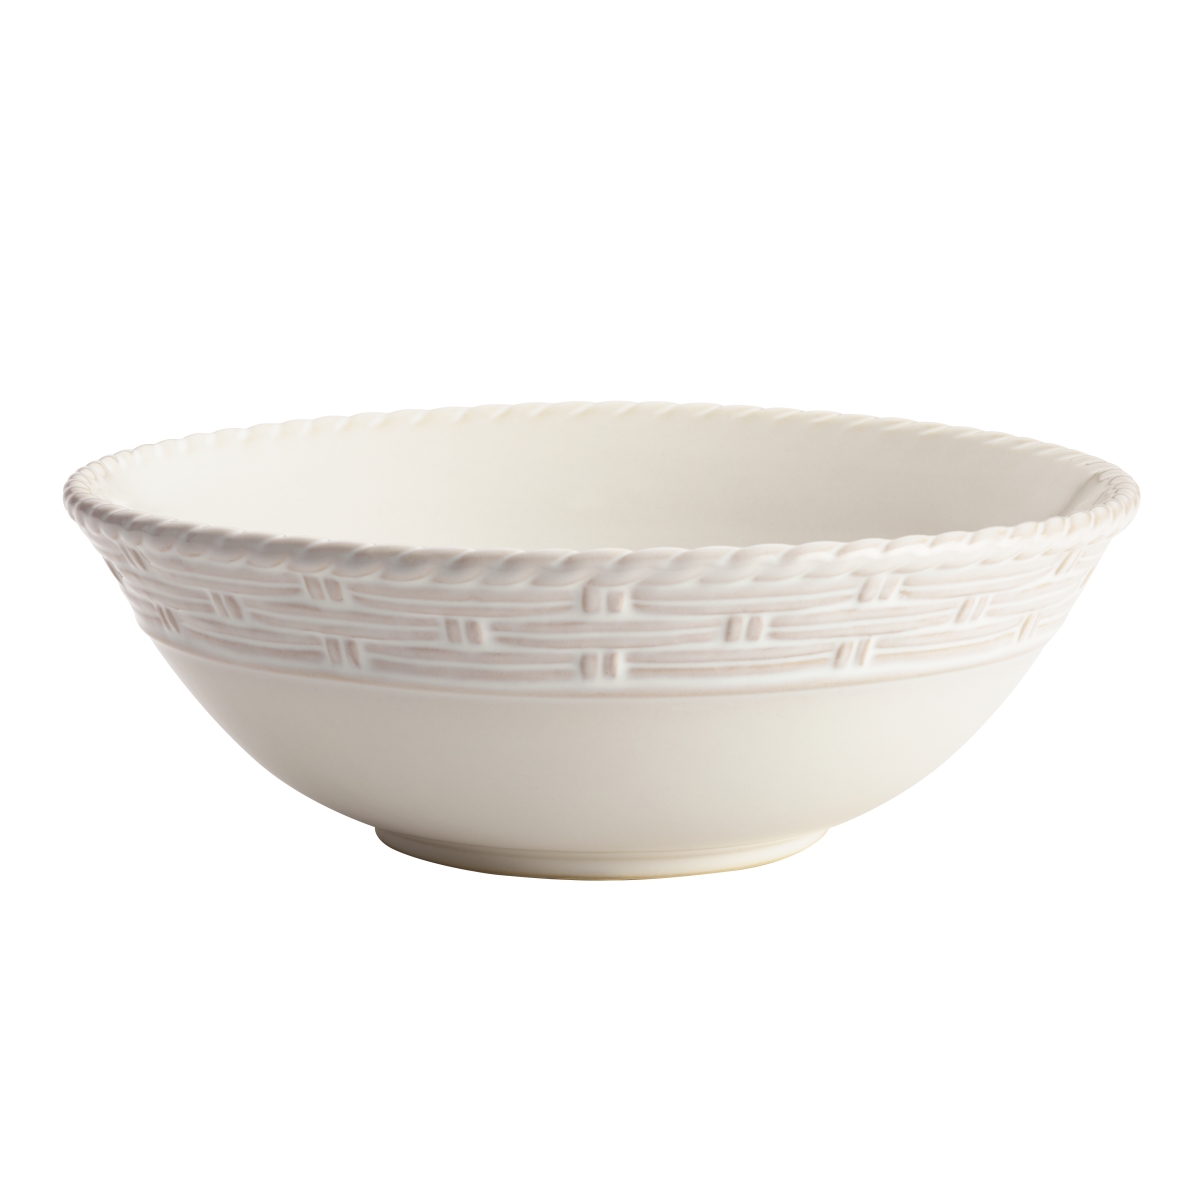 46789 Stoneware Serveware Round Serving Bowl & Vineyard Basket, Cream - 10 In.